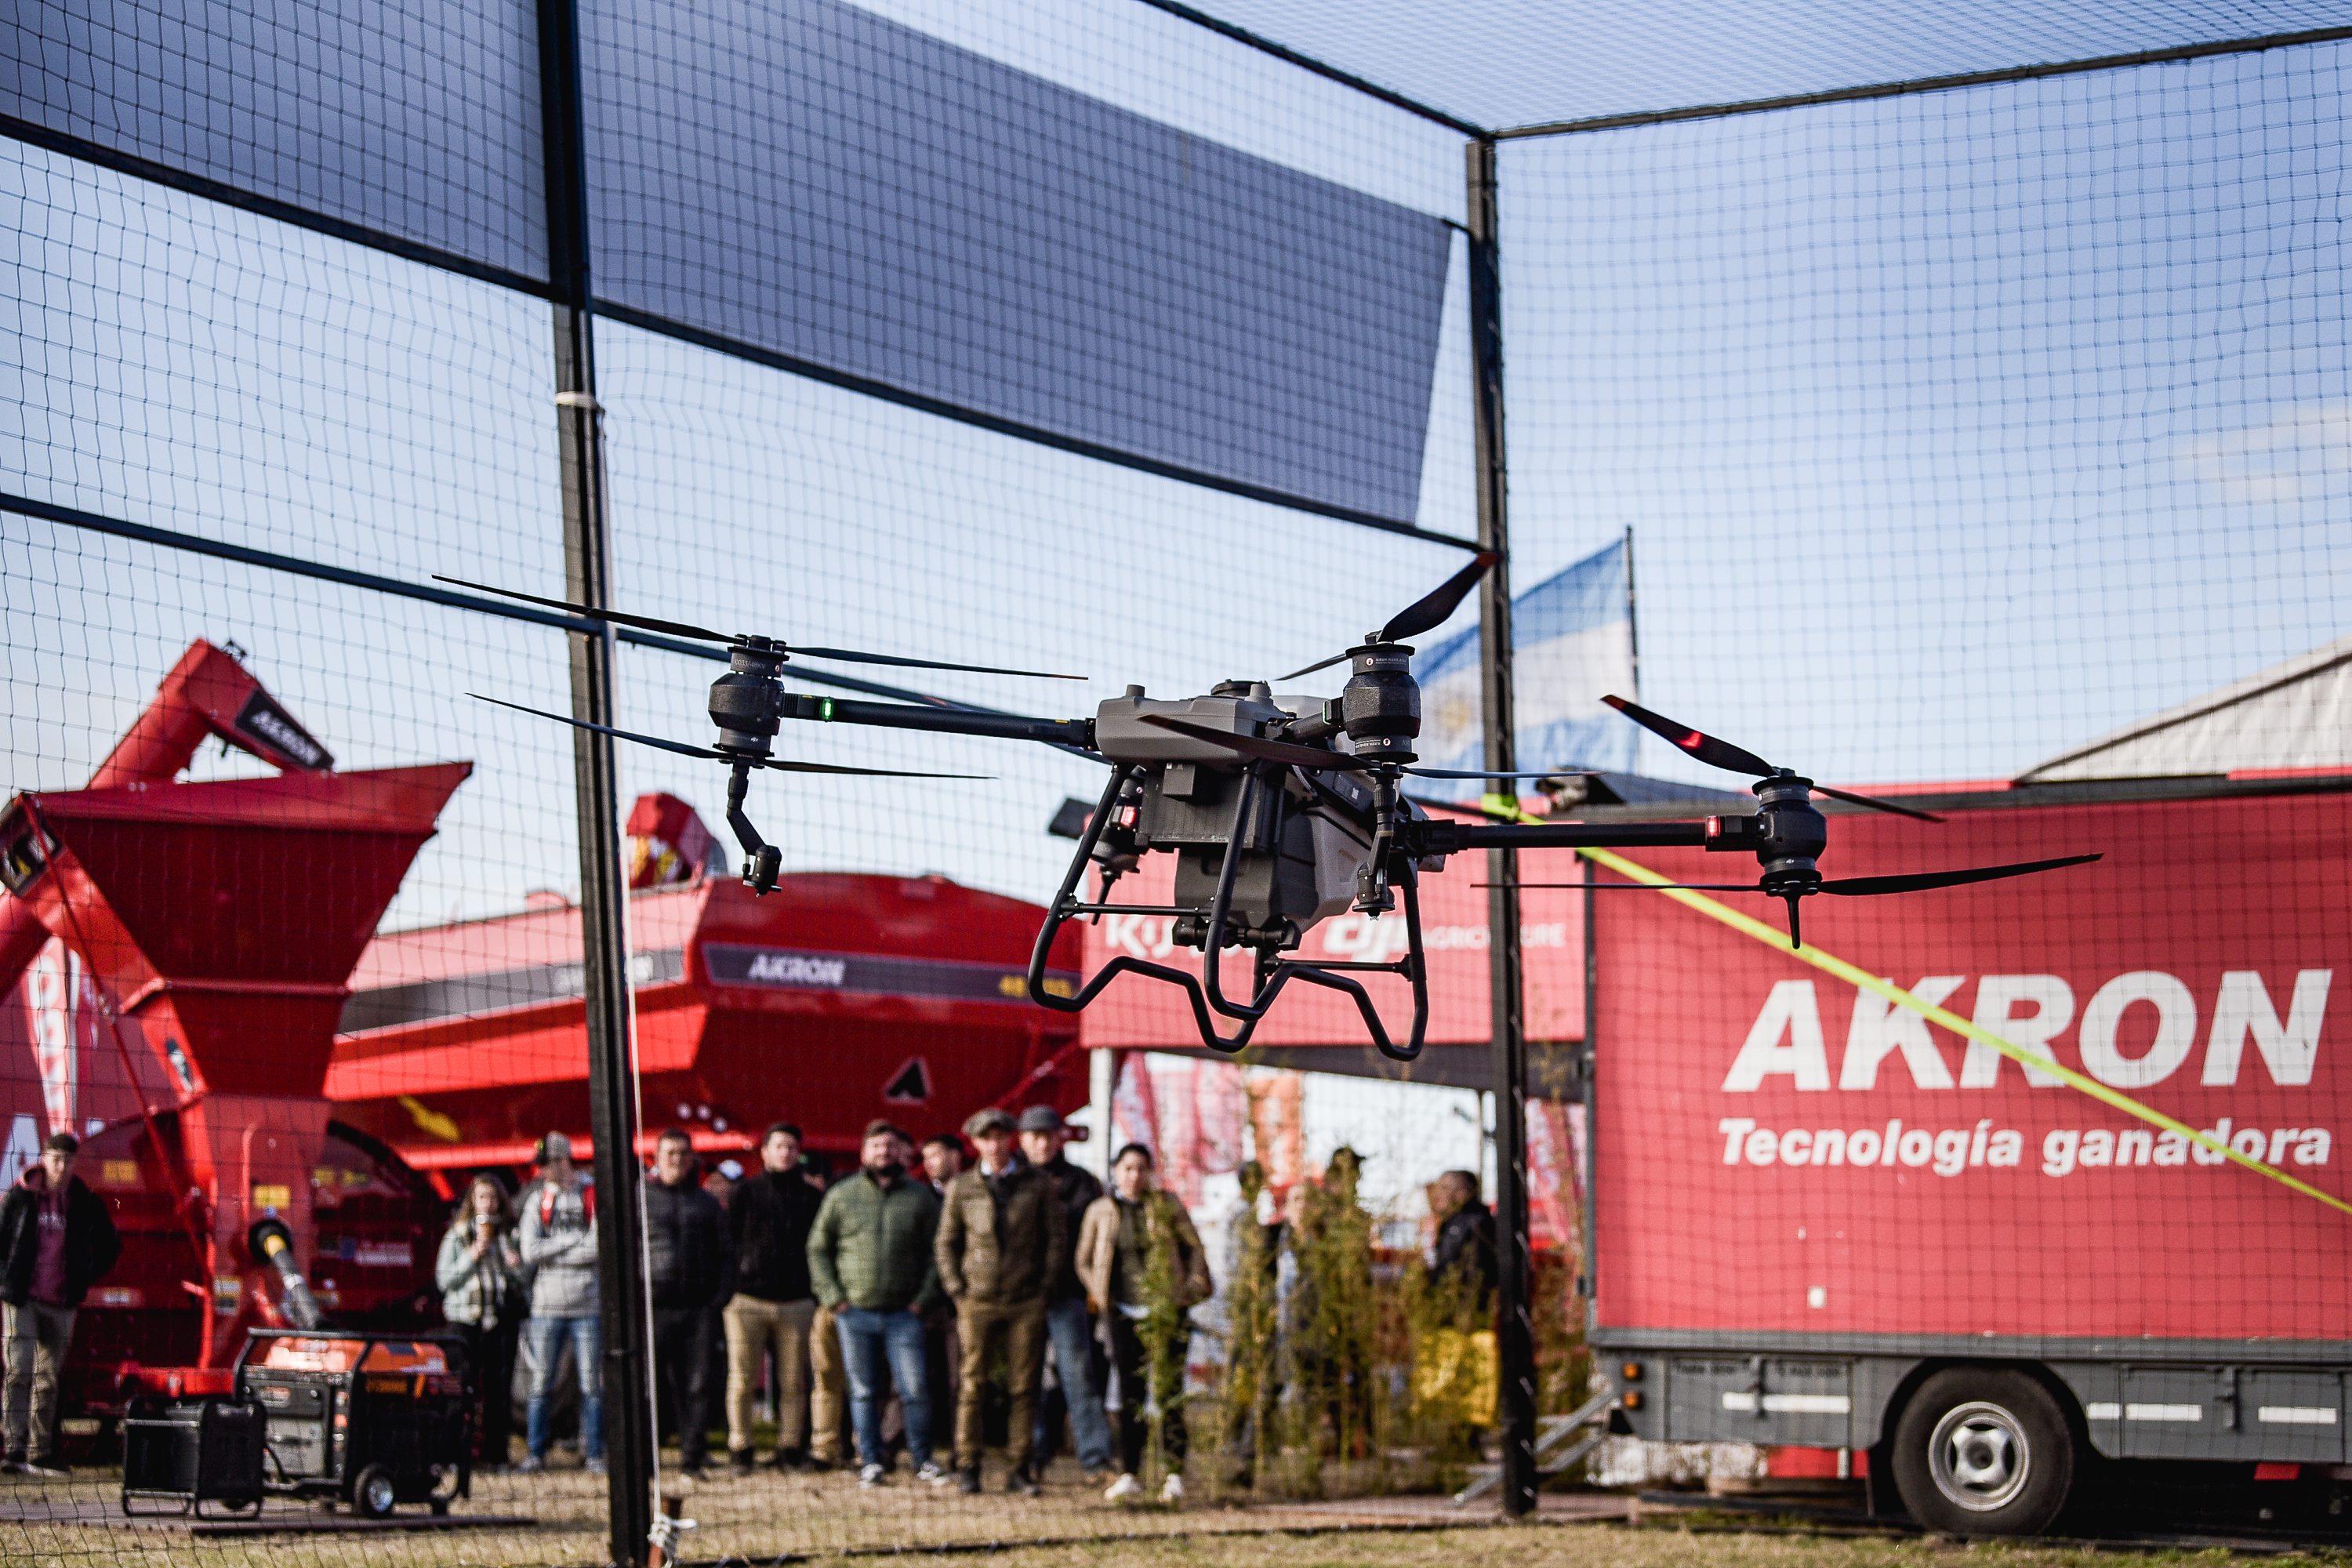 Drones agrícolas DJI Agras, una solución tecnológica y revolucionaria